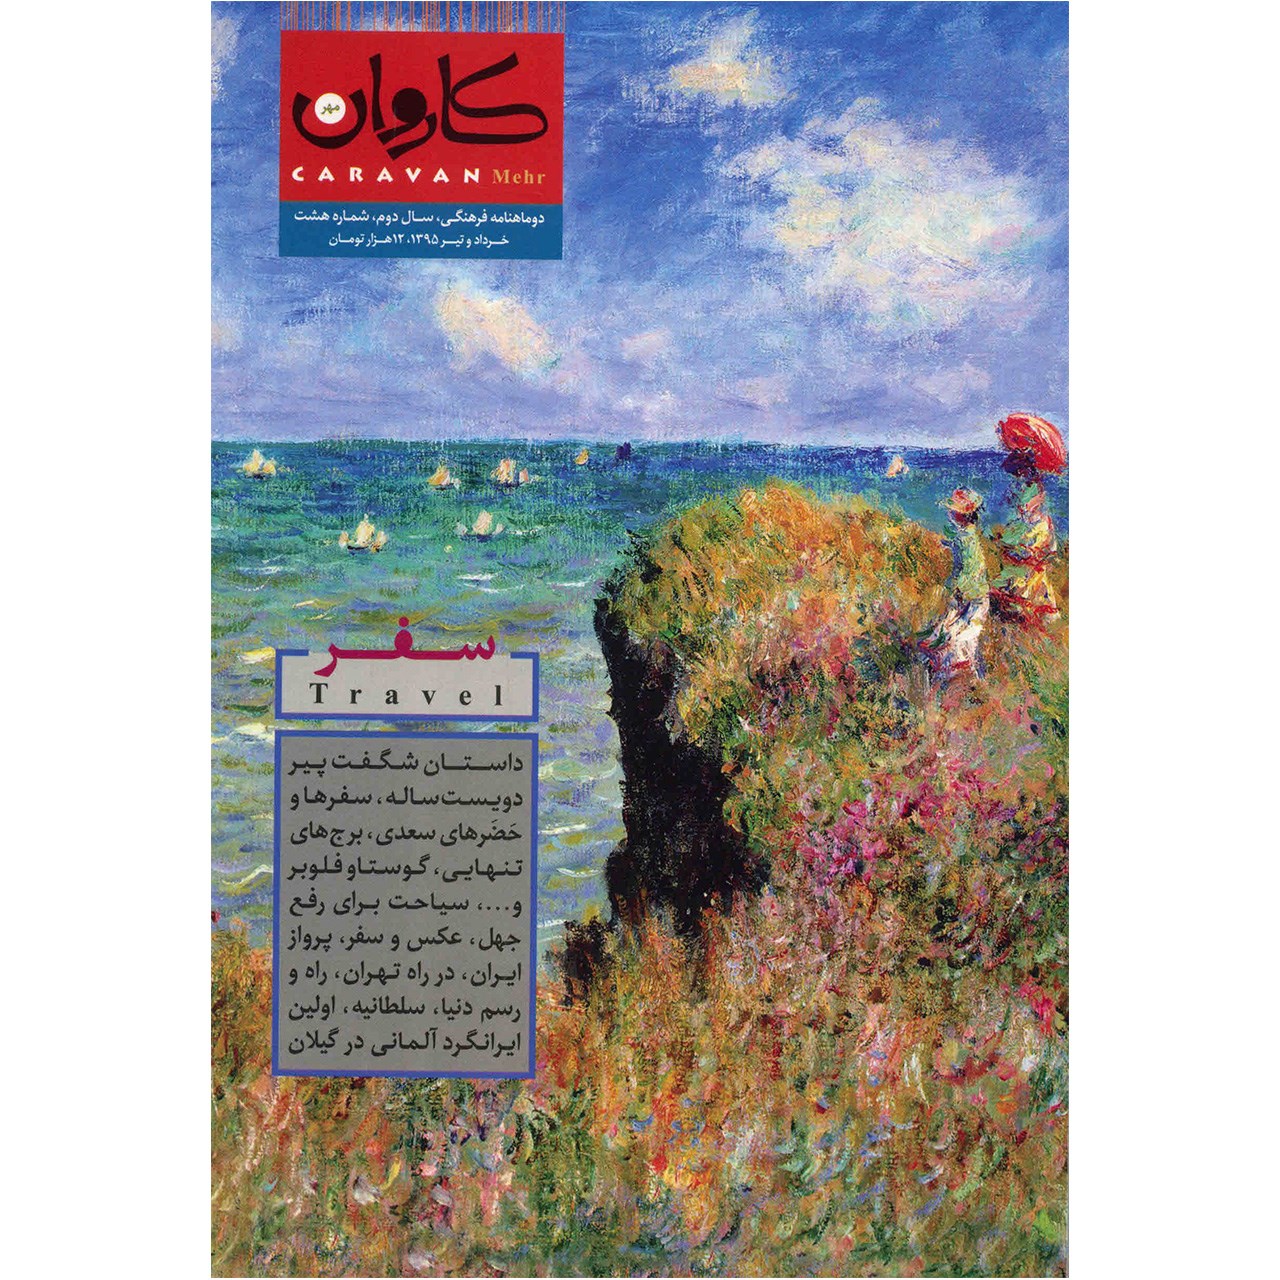 مجله کاروان مهر - شماره 8